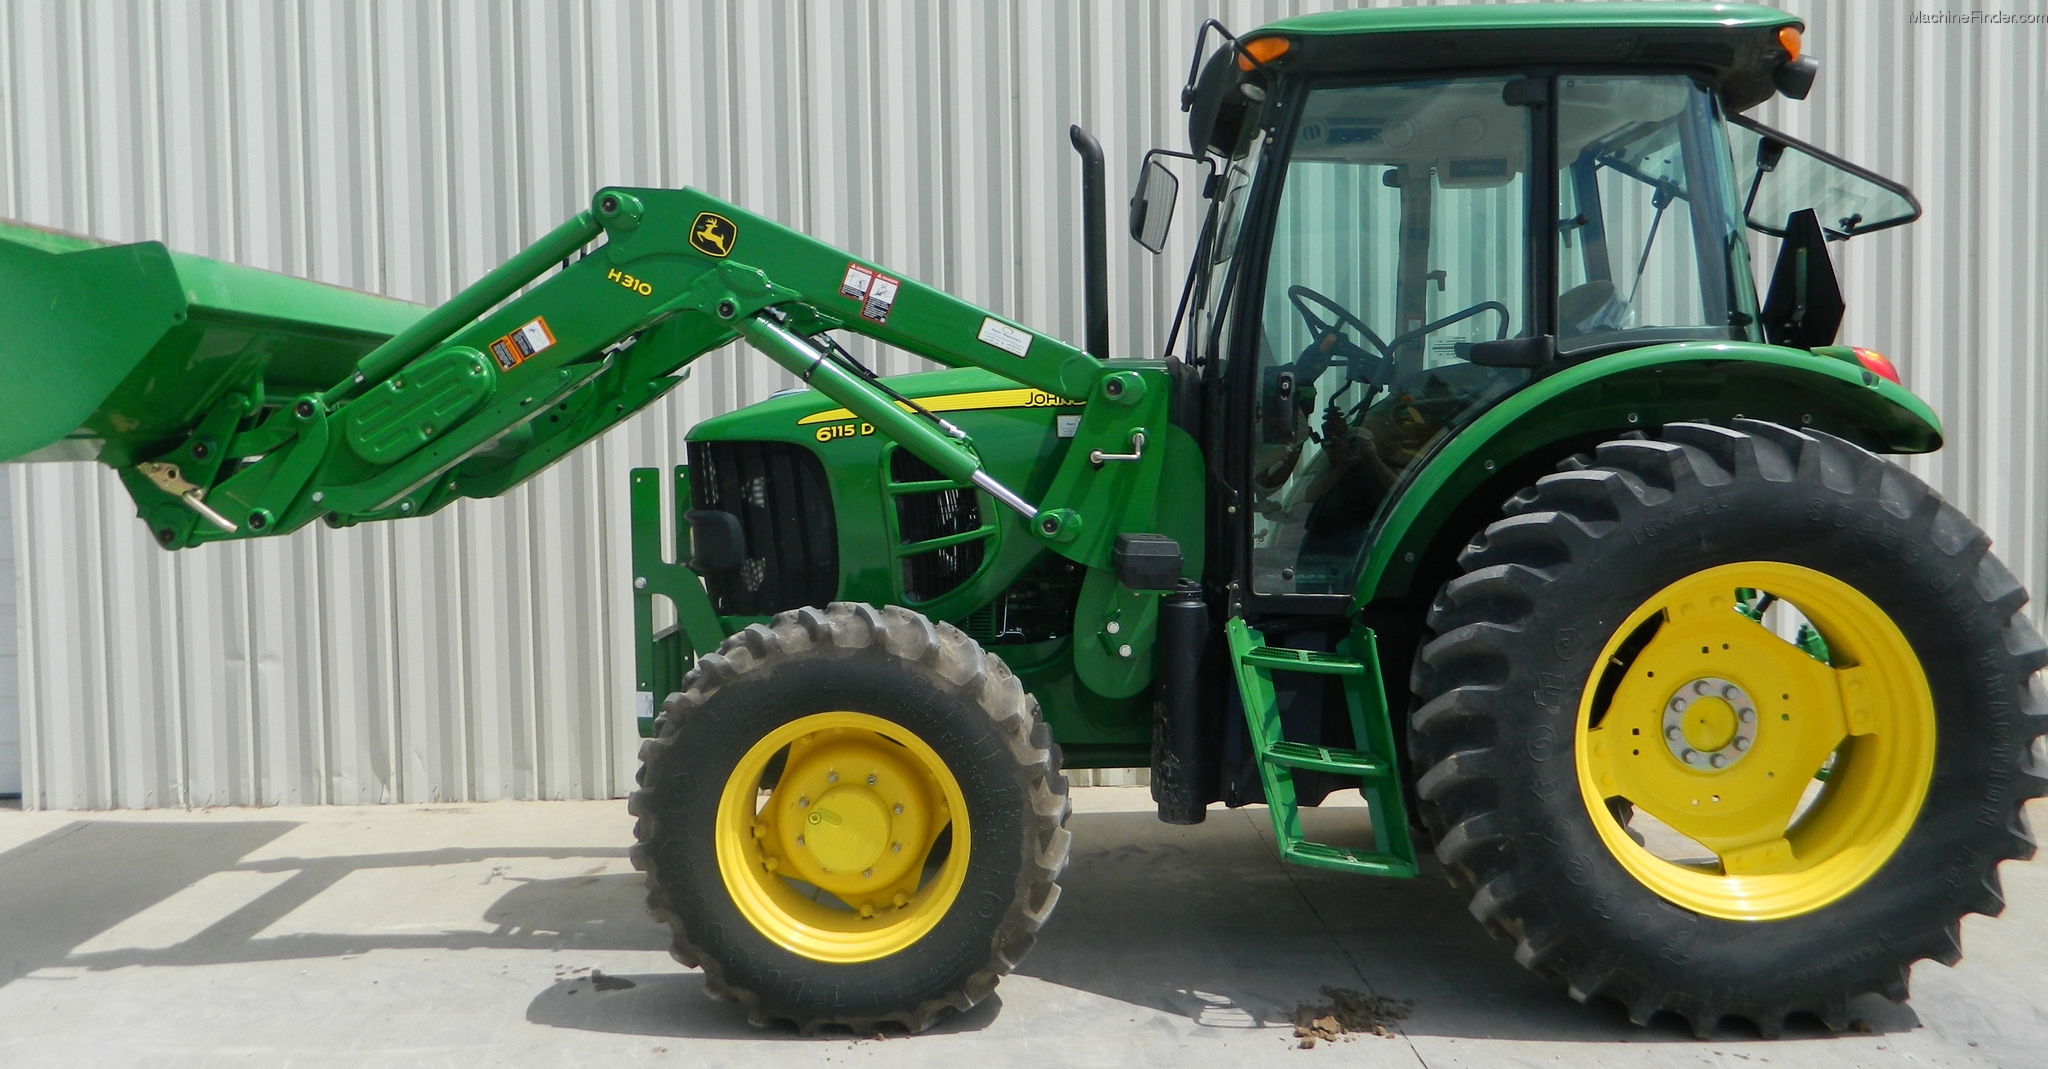 2012-john-deere-6115d-tractors-utility-40-100hp-john-deere